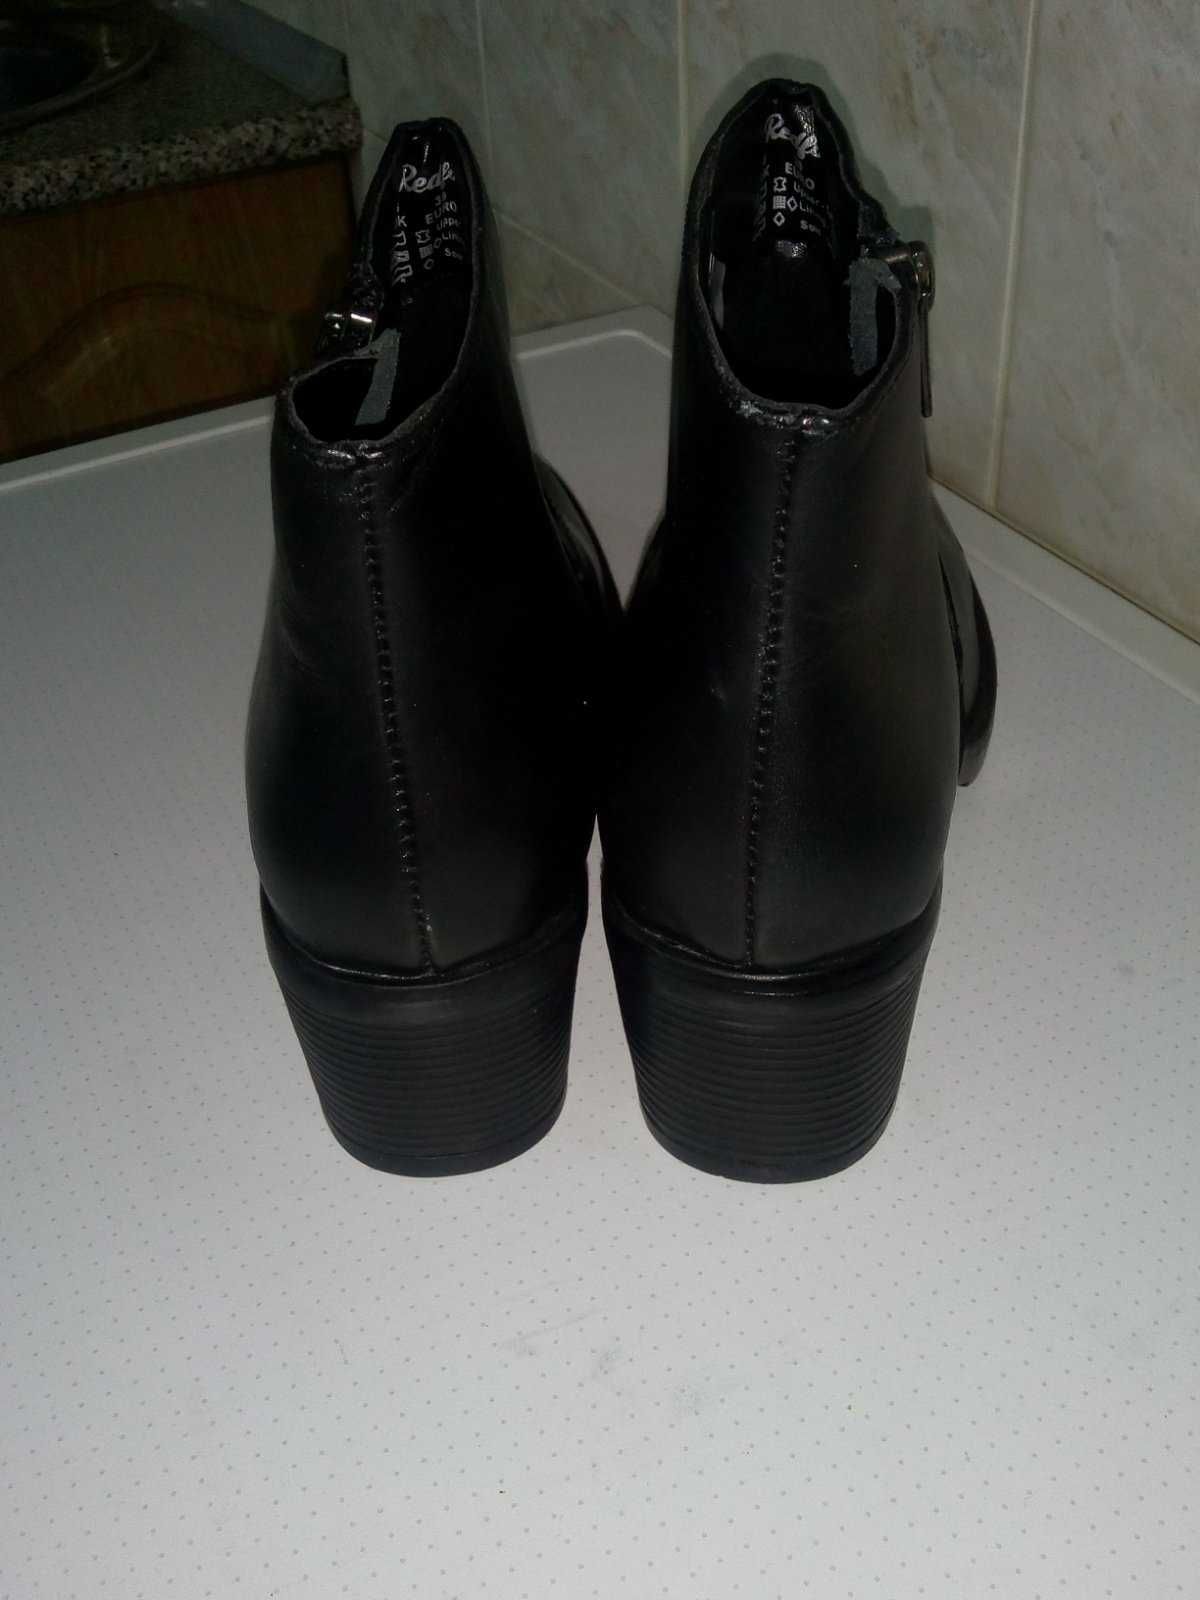 Женские ботинки Redfoot 39р 26см натуральная кожа